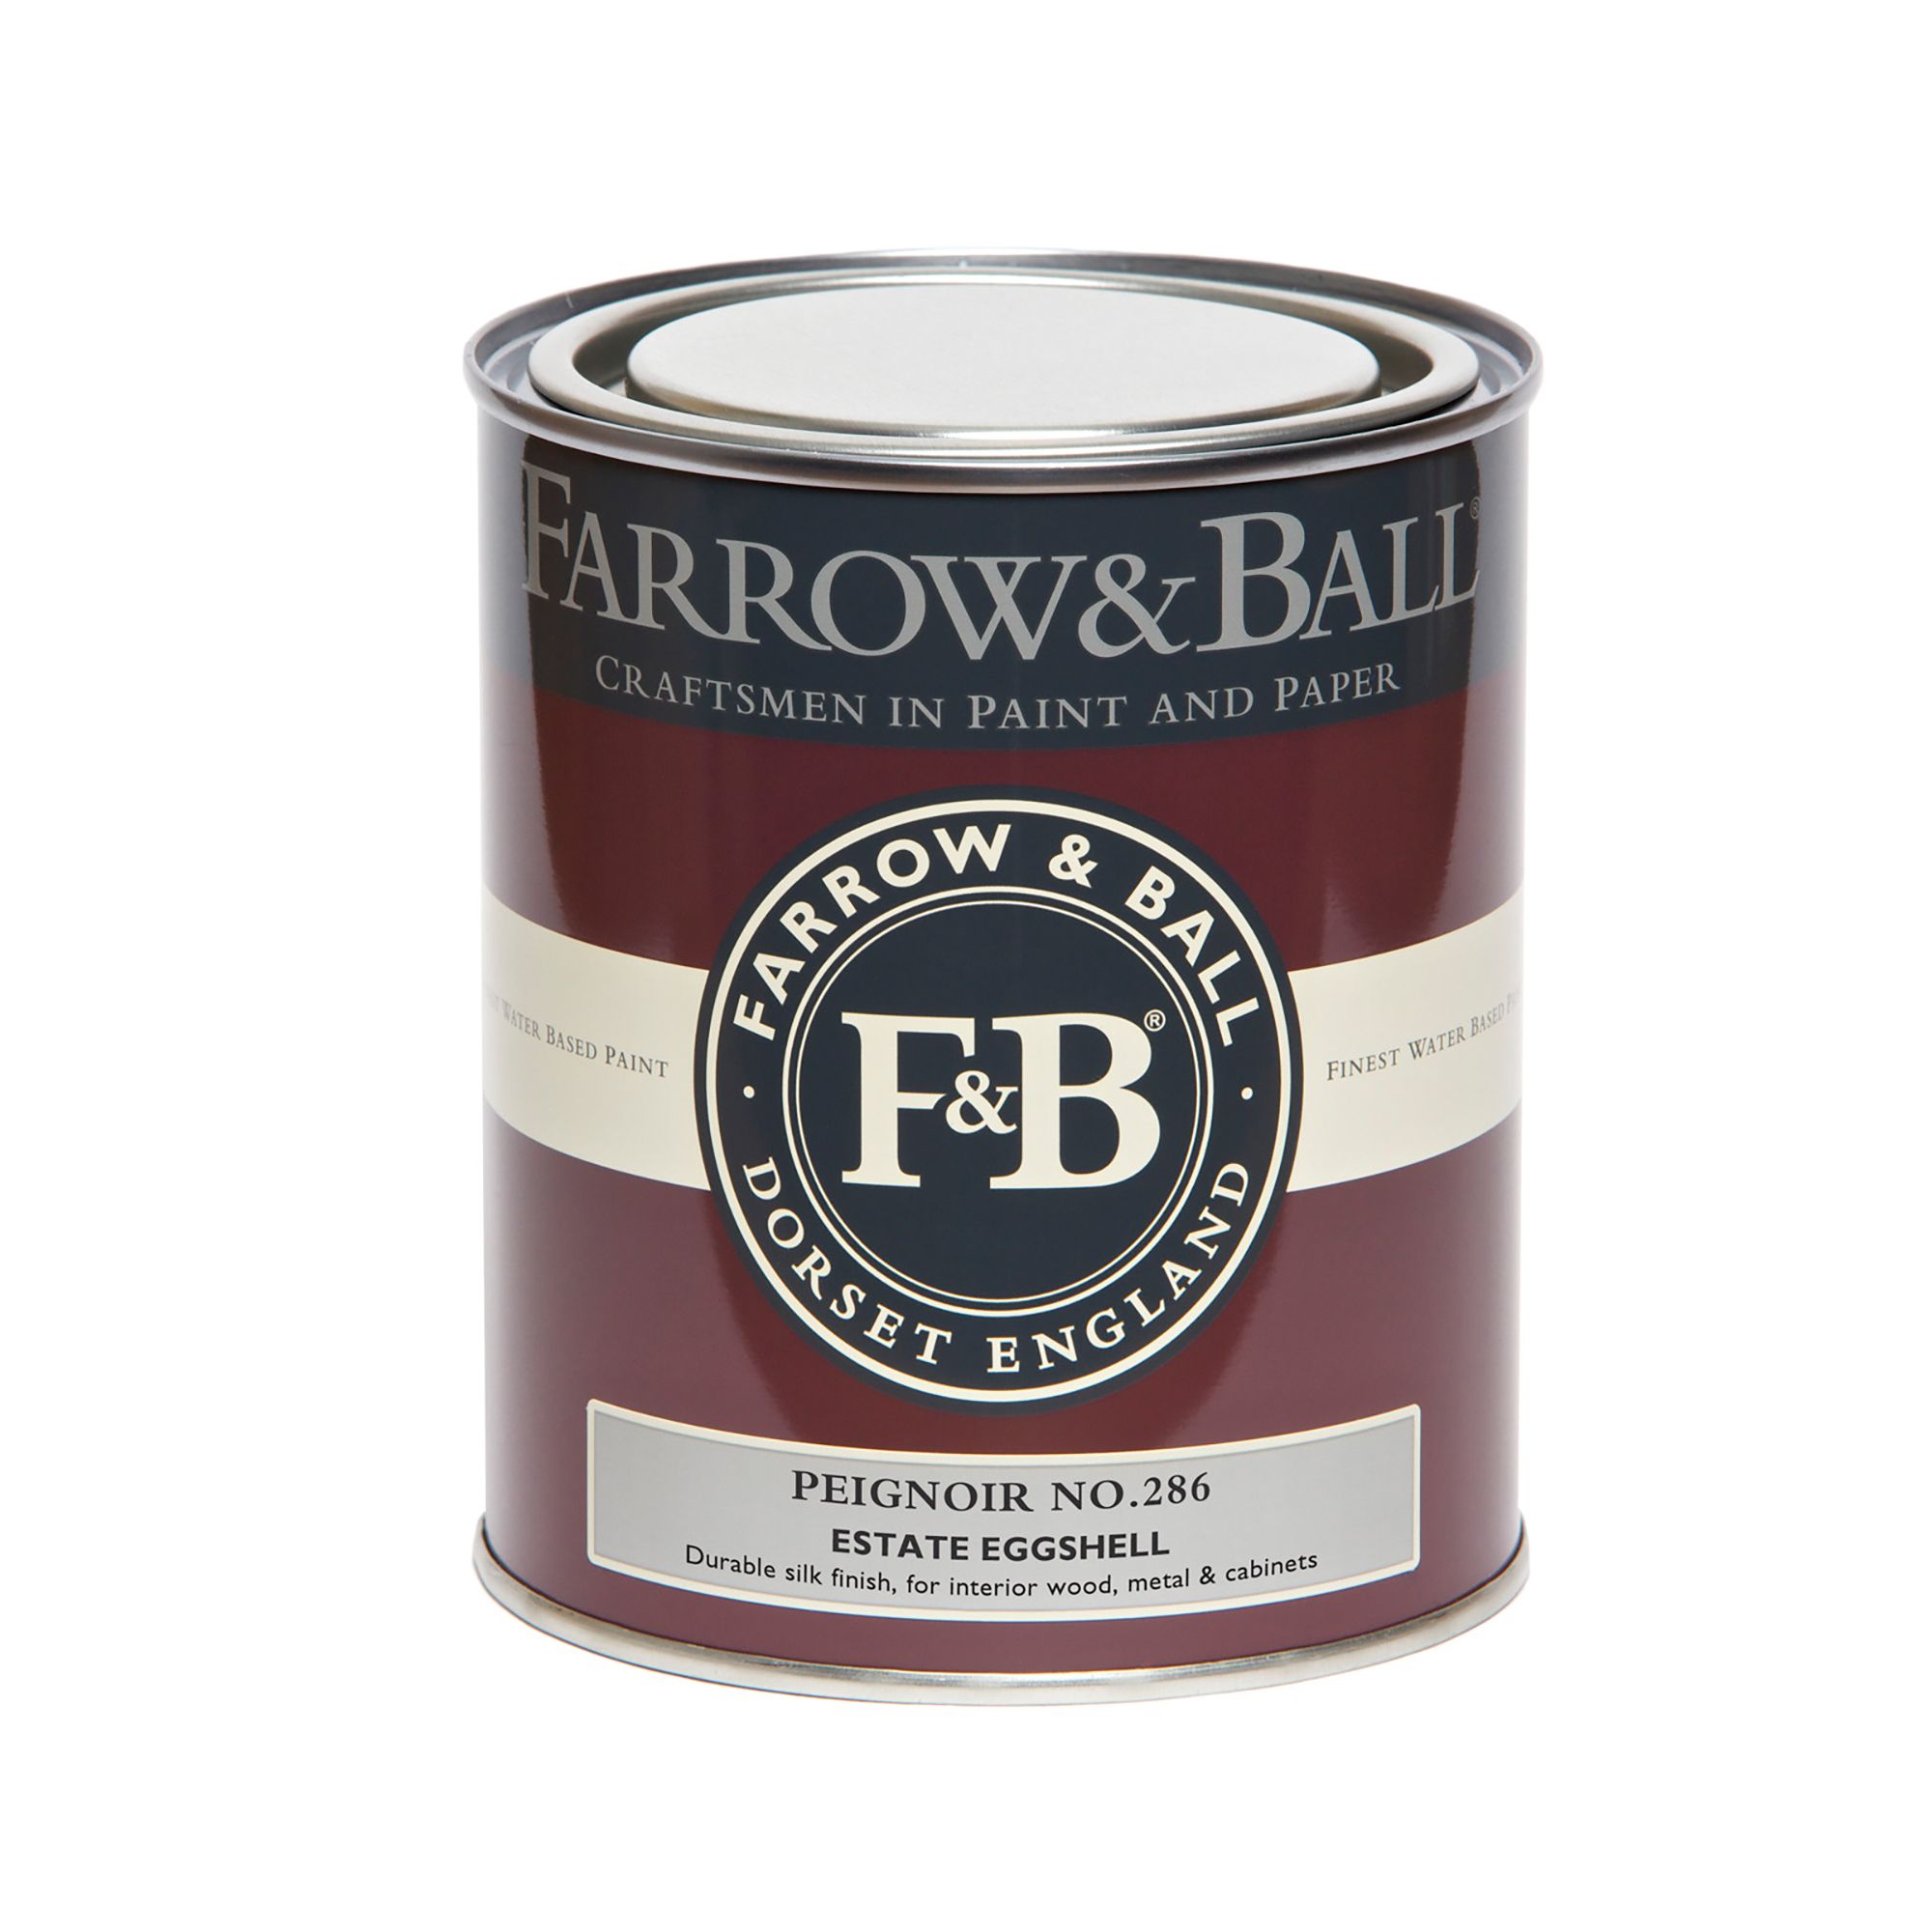 Farrow & Ball Estate Peignoir No.286 Eggshell Paint, 750ml